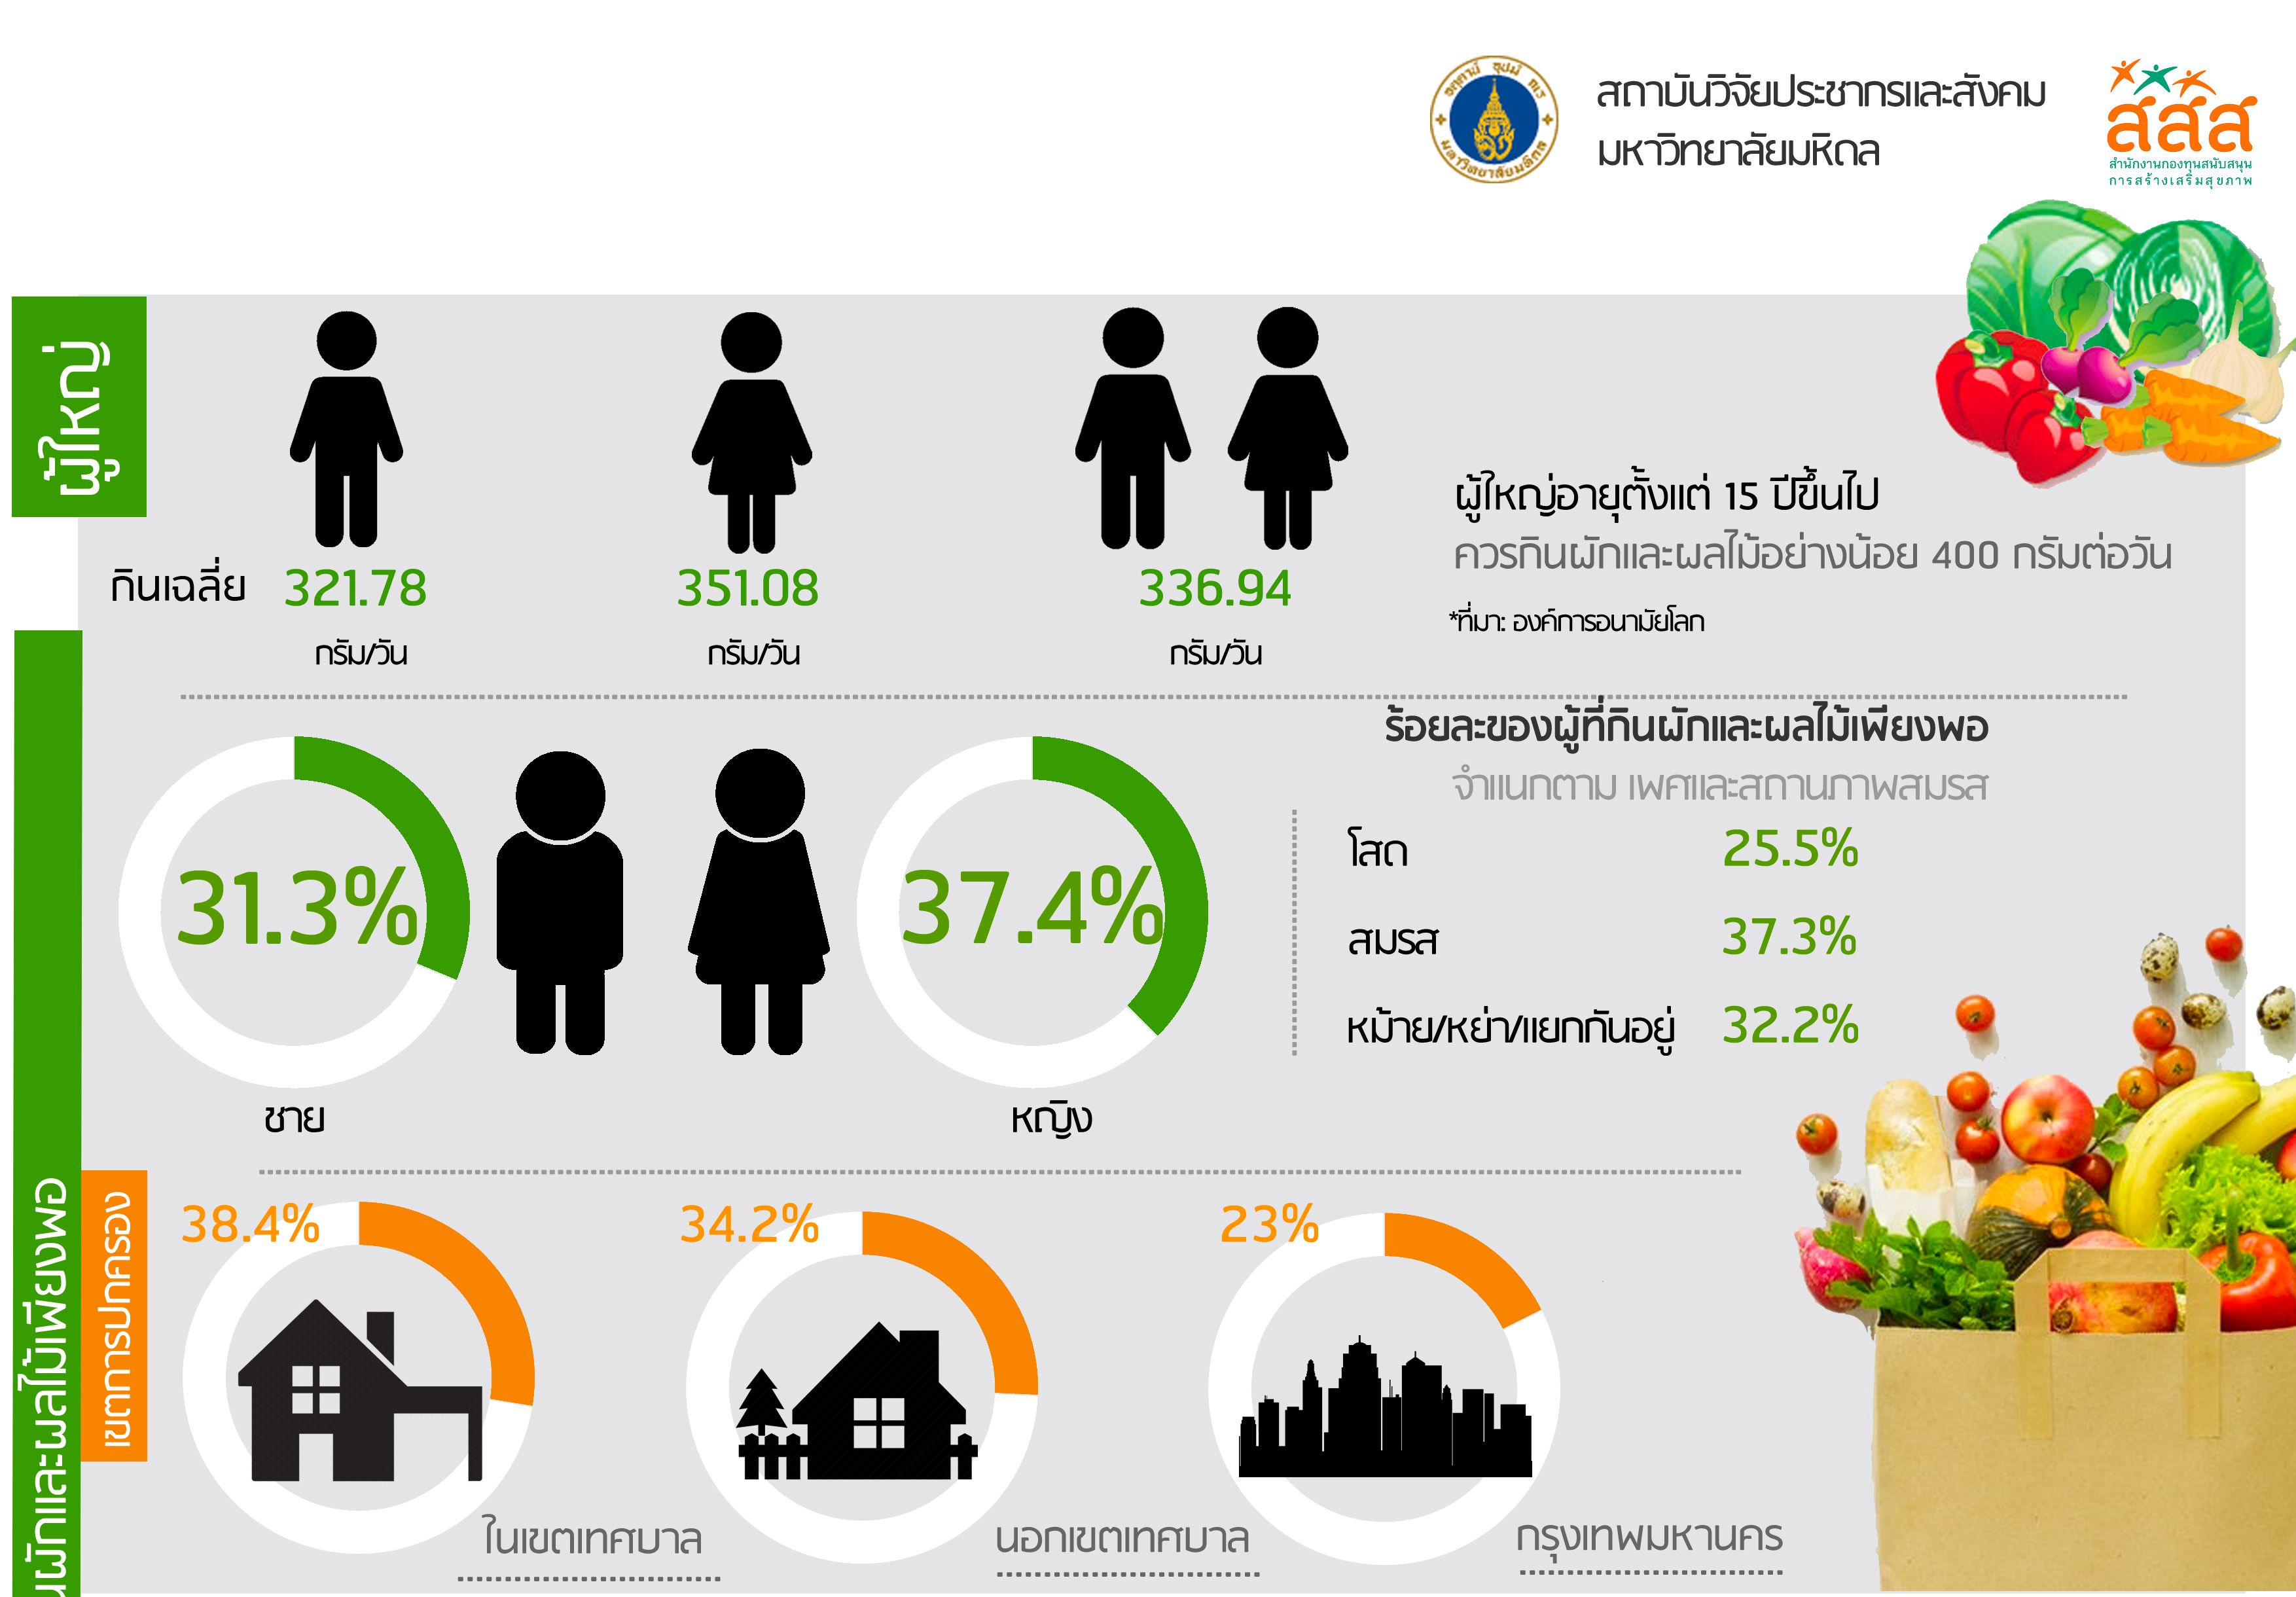 โครงการสำรวจติดตามพฤติกรรมการกินผักและผลไม้ของคนไทย